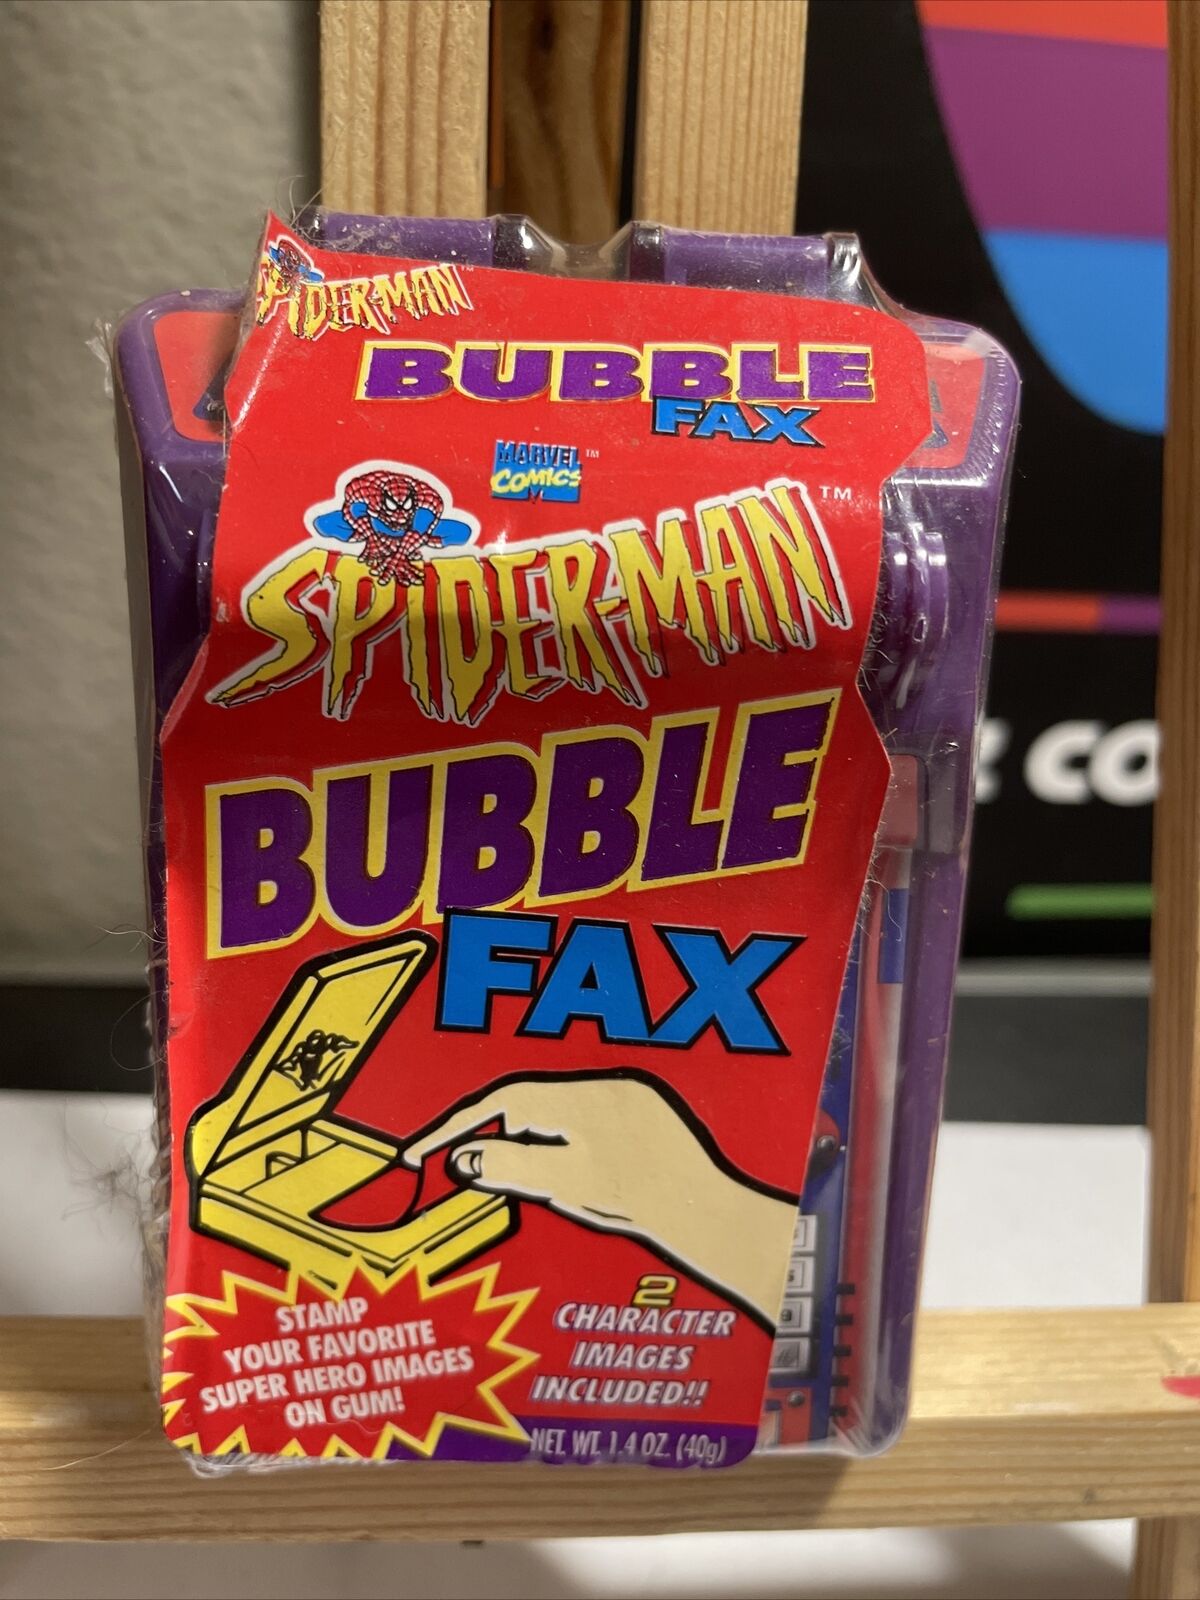 1995 SEALED Spiderman Bubble Gum Fax Box Wrapper